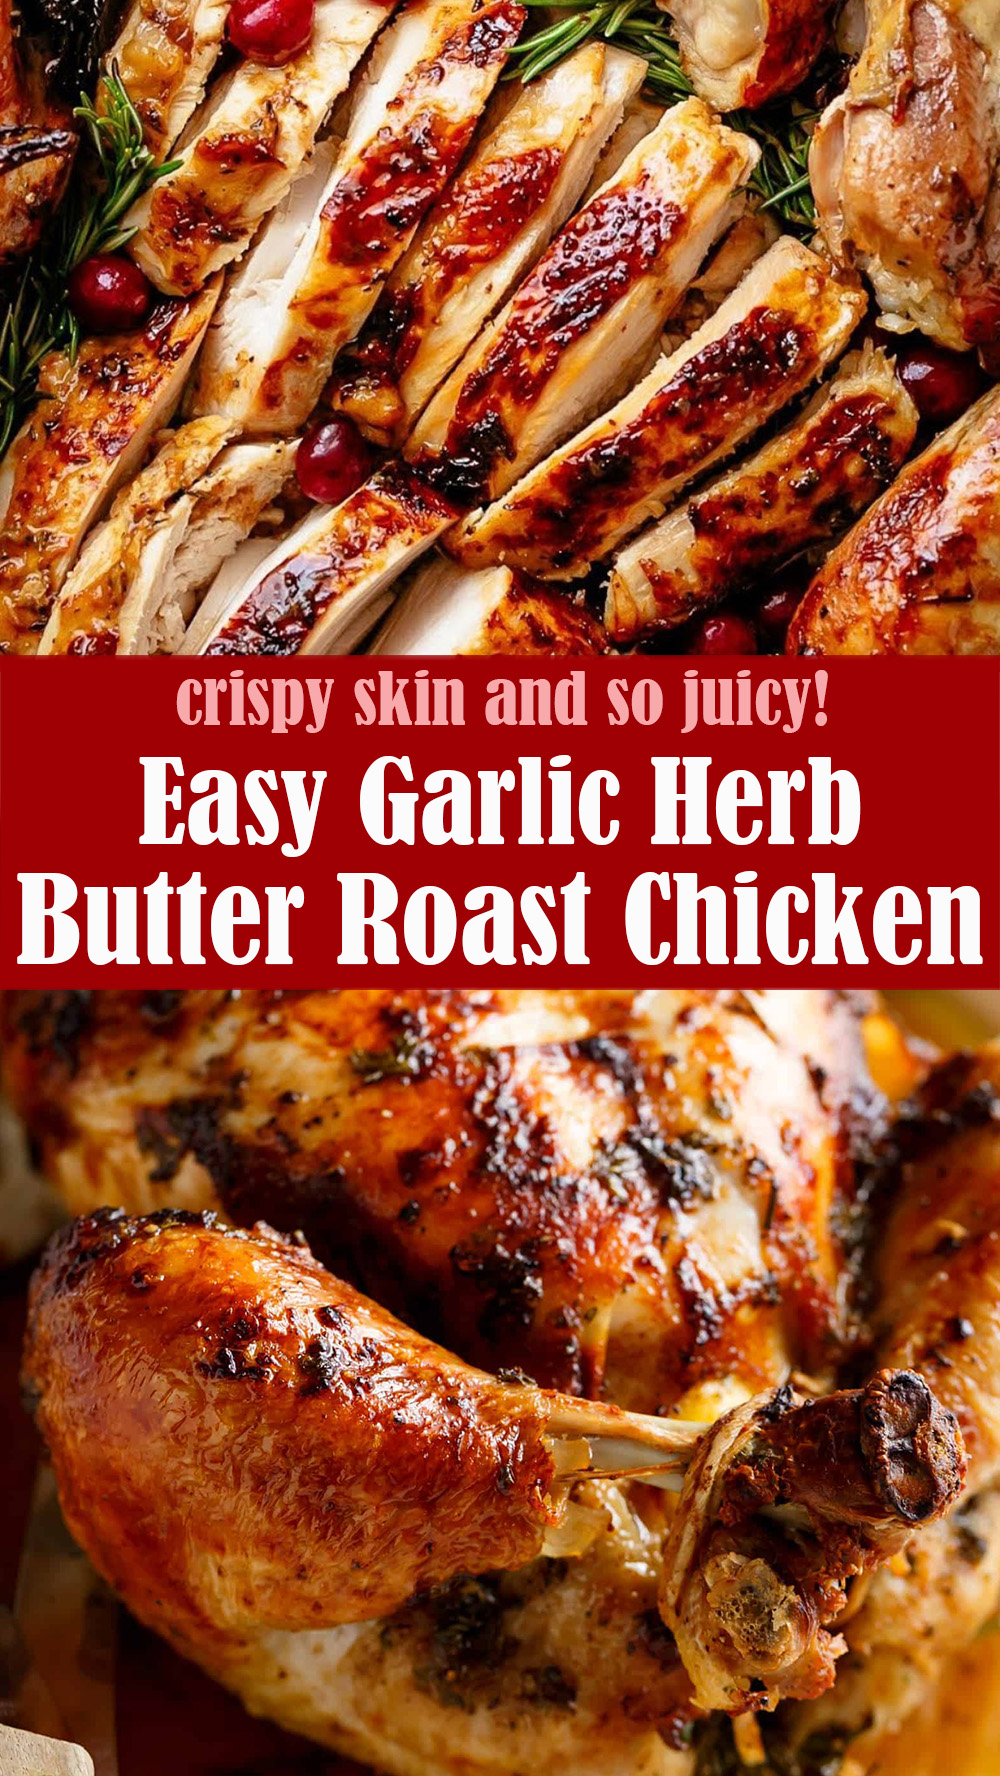 Easy Garlic Herb Butter Roast Chicken